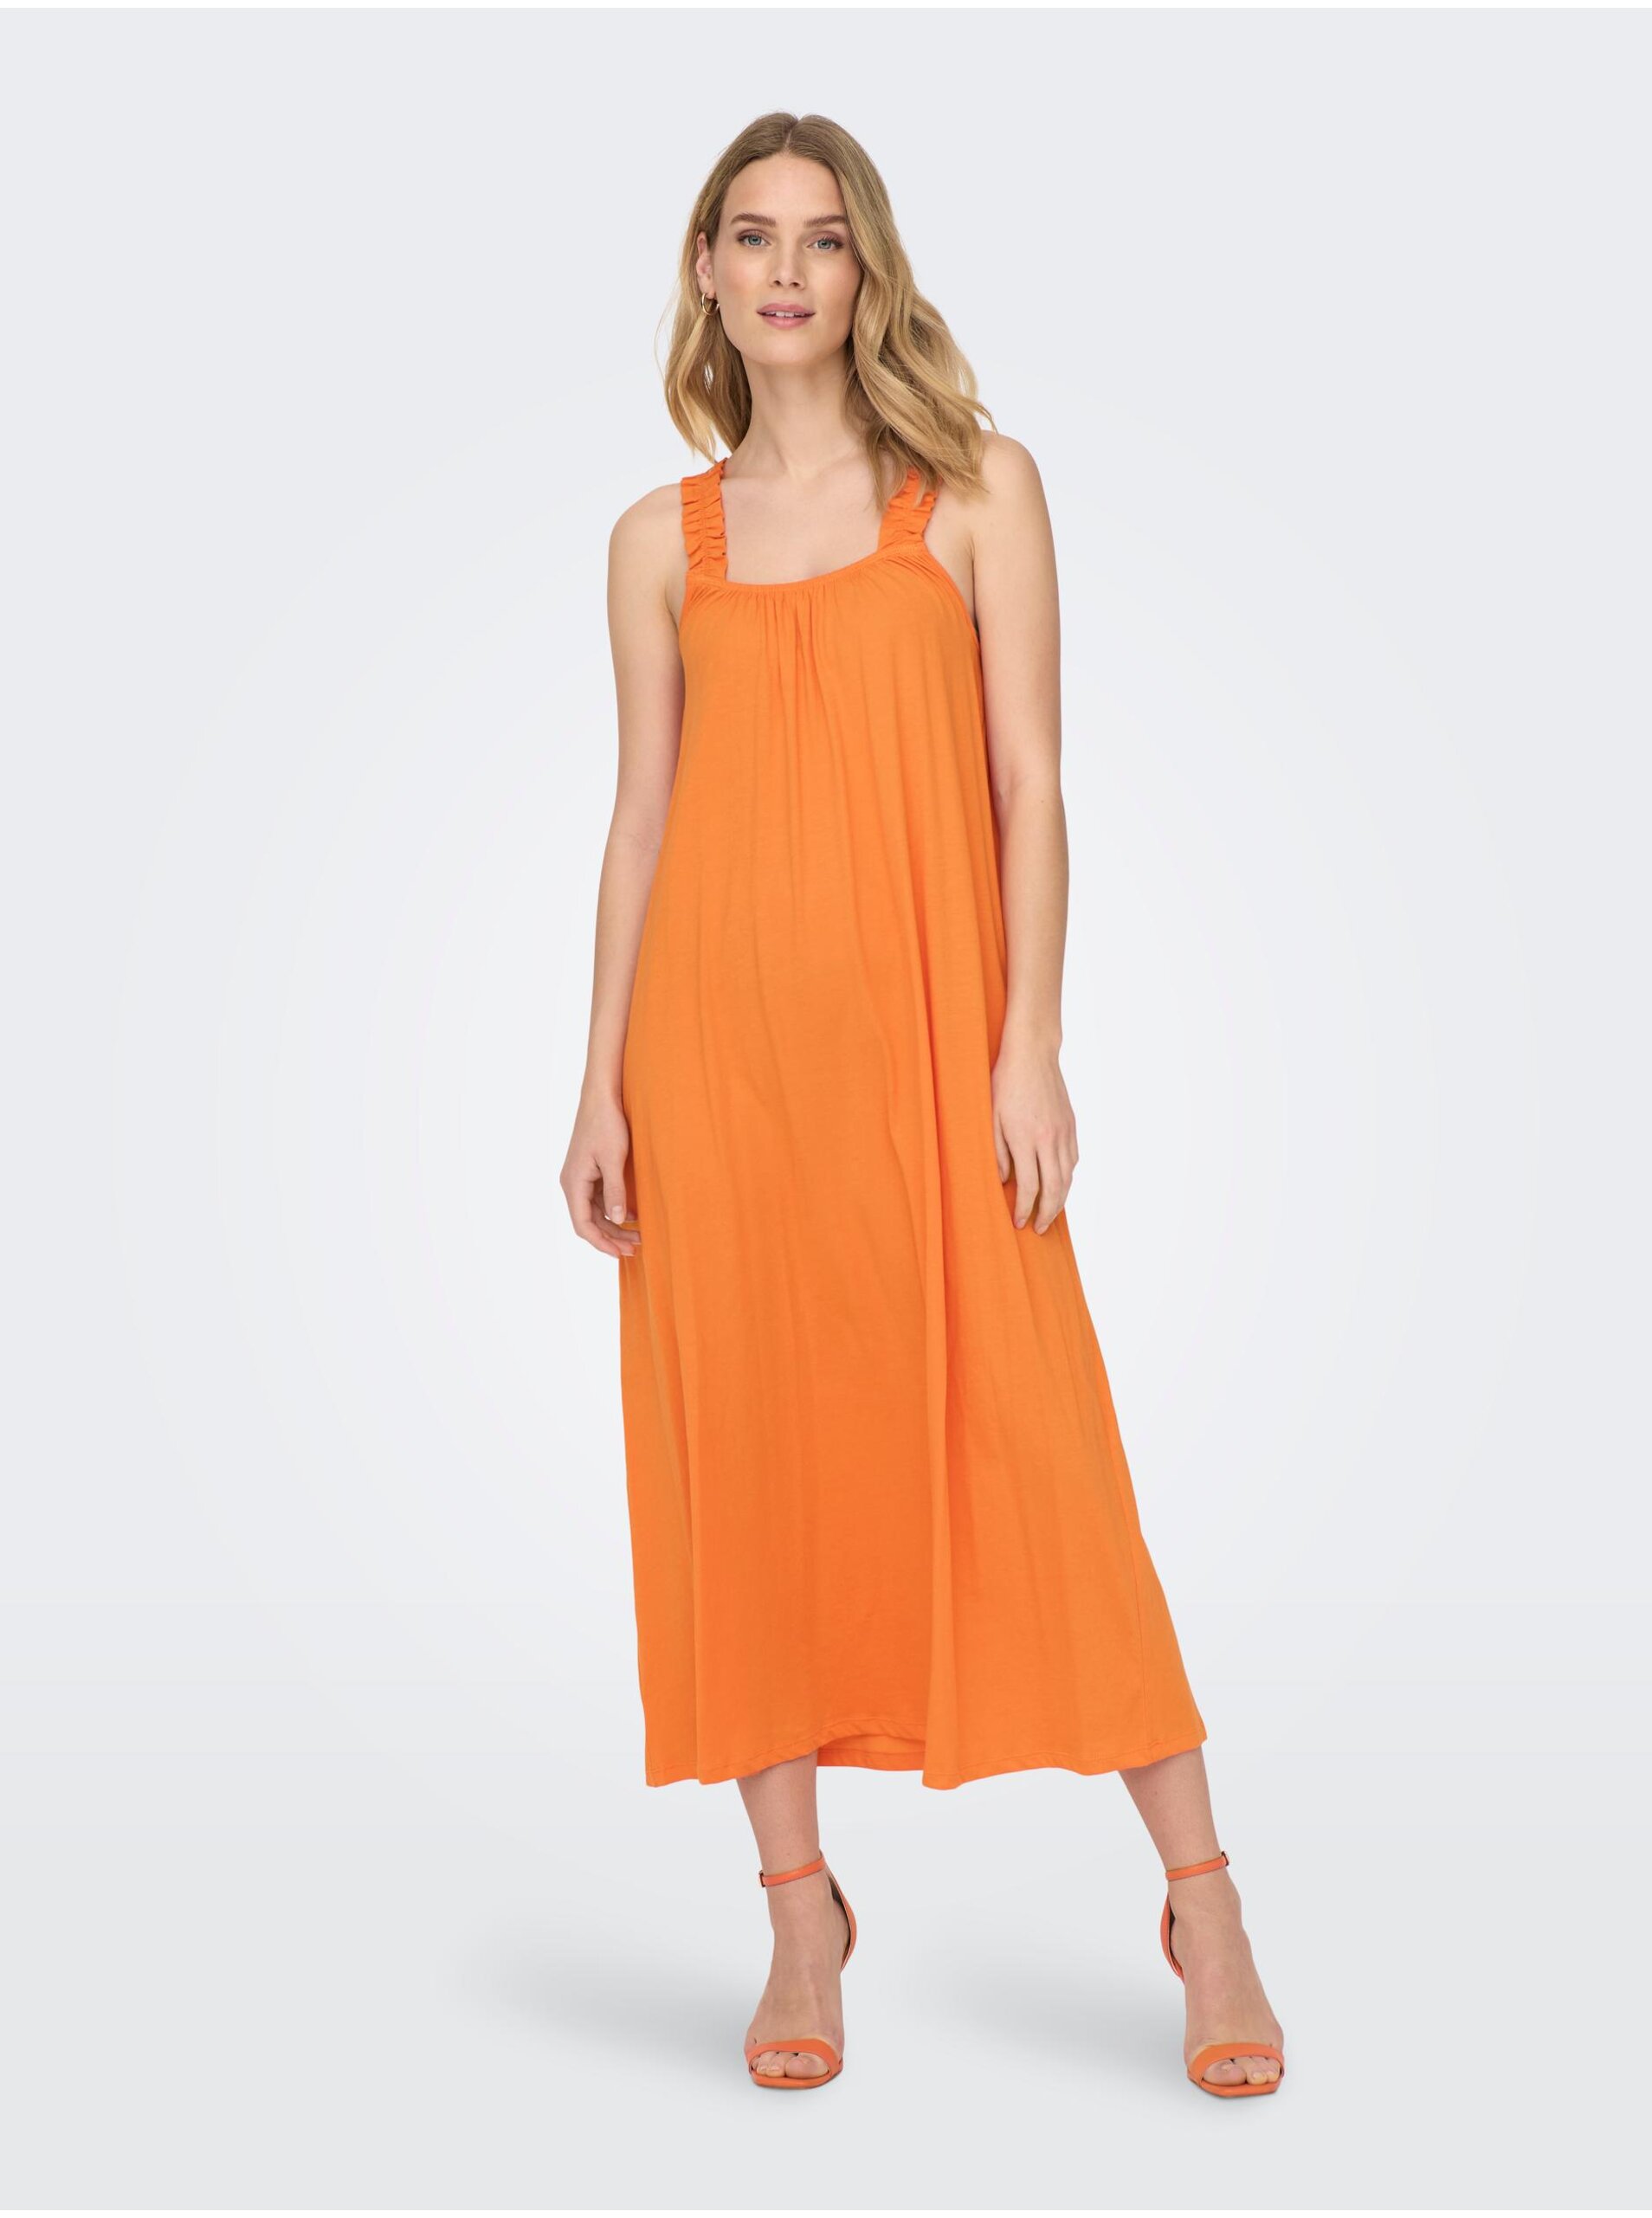 Oranžové dámske šaty LEN máj - ženy